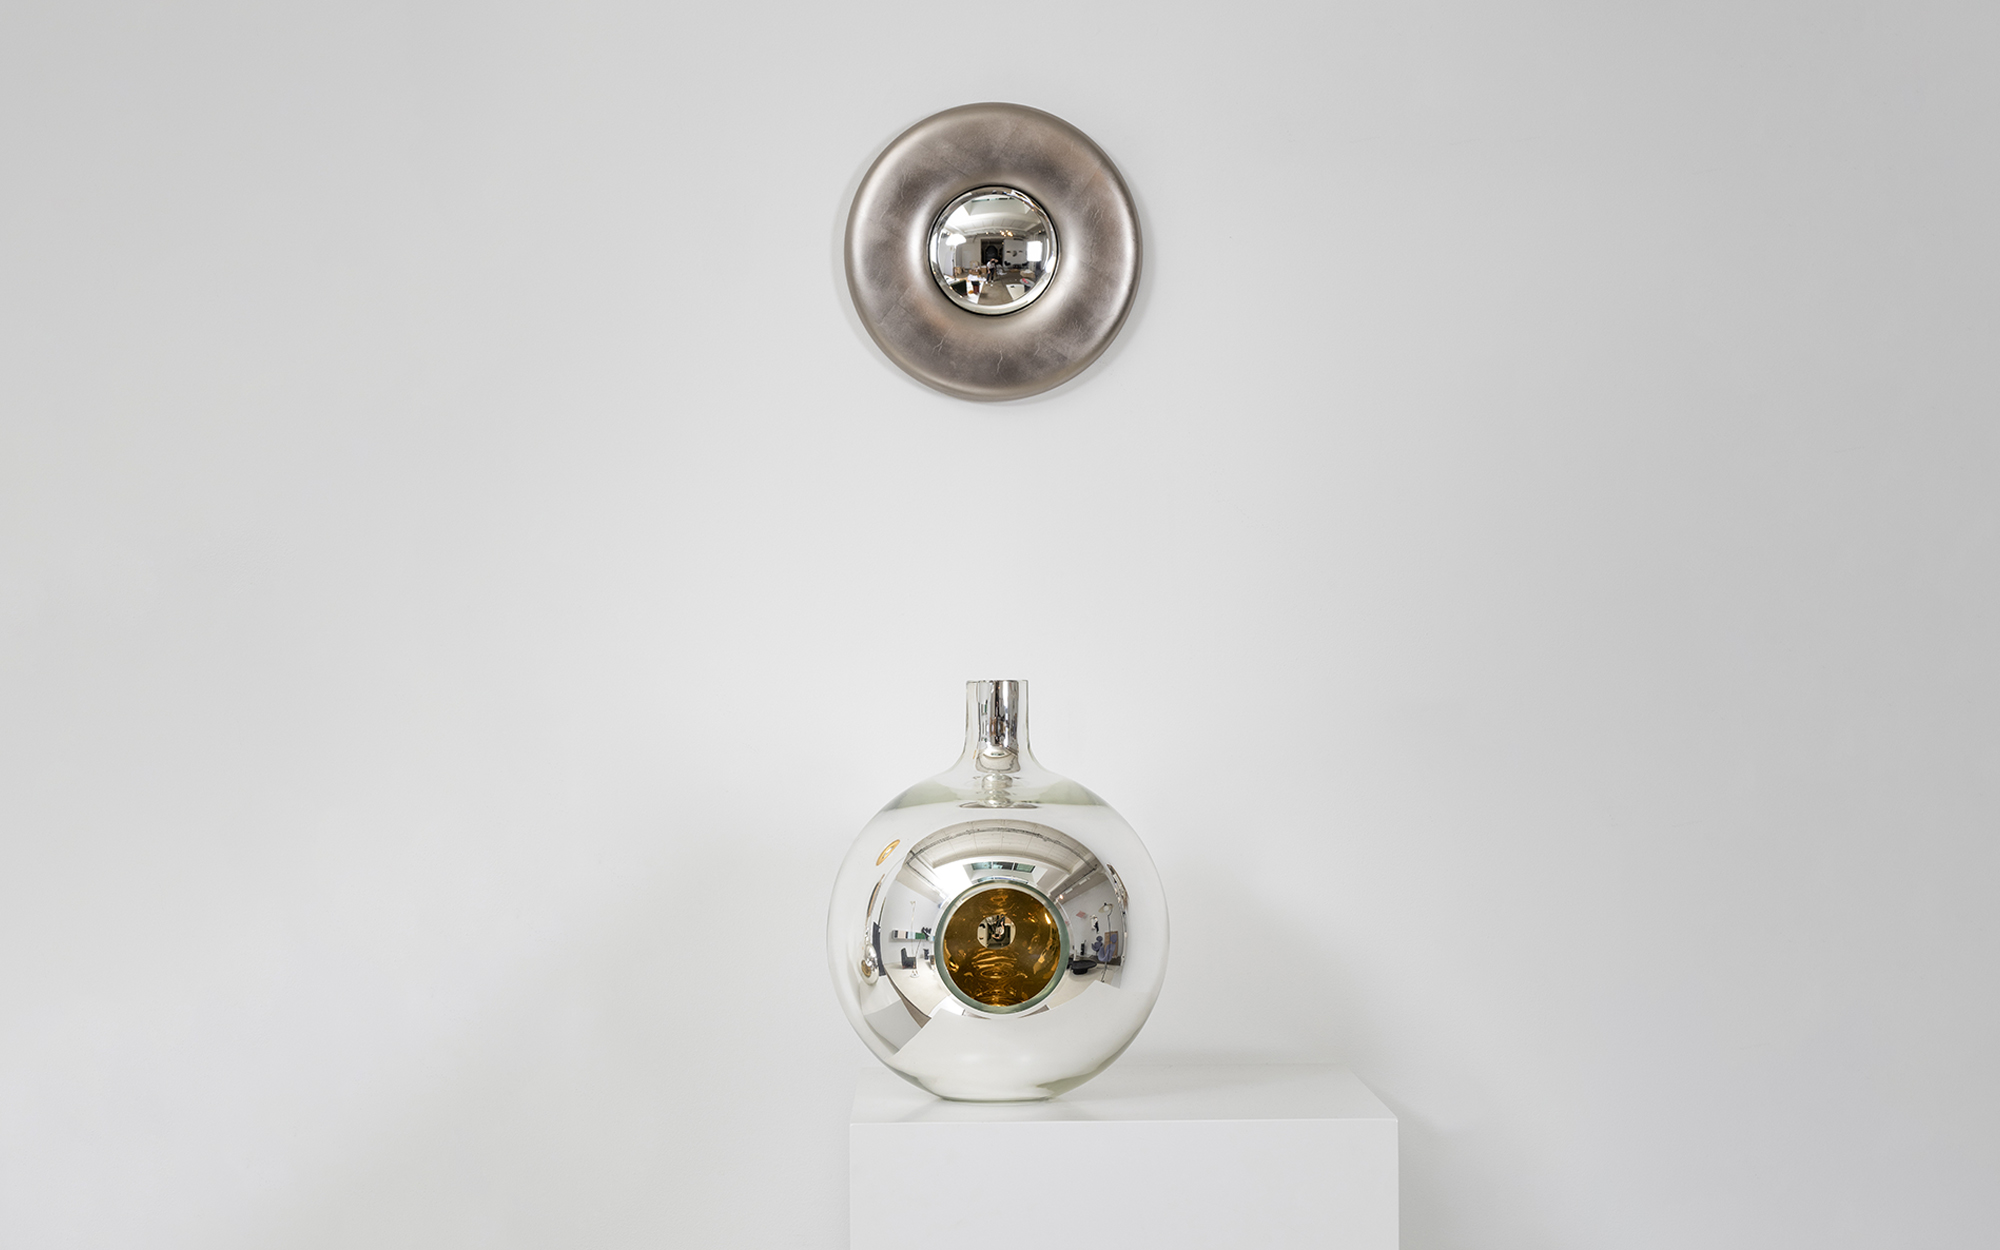 Convex Mirror Vase Single - Front - Lucas Ratton x kamel mennour x Galerie kreo x Jacques Lacoste in Saint-Tropez.